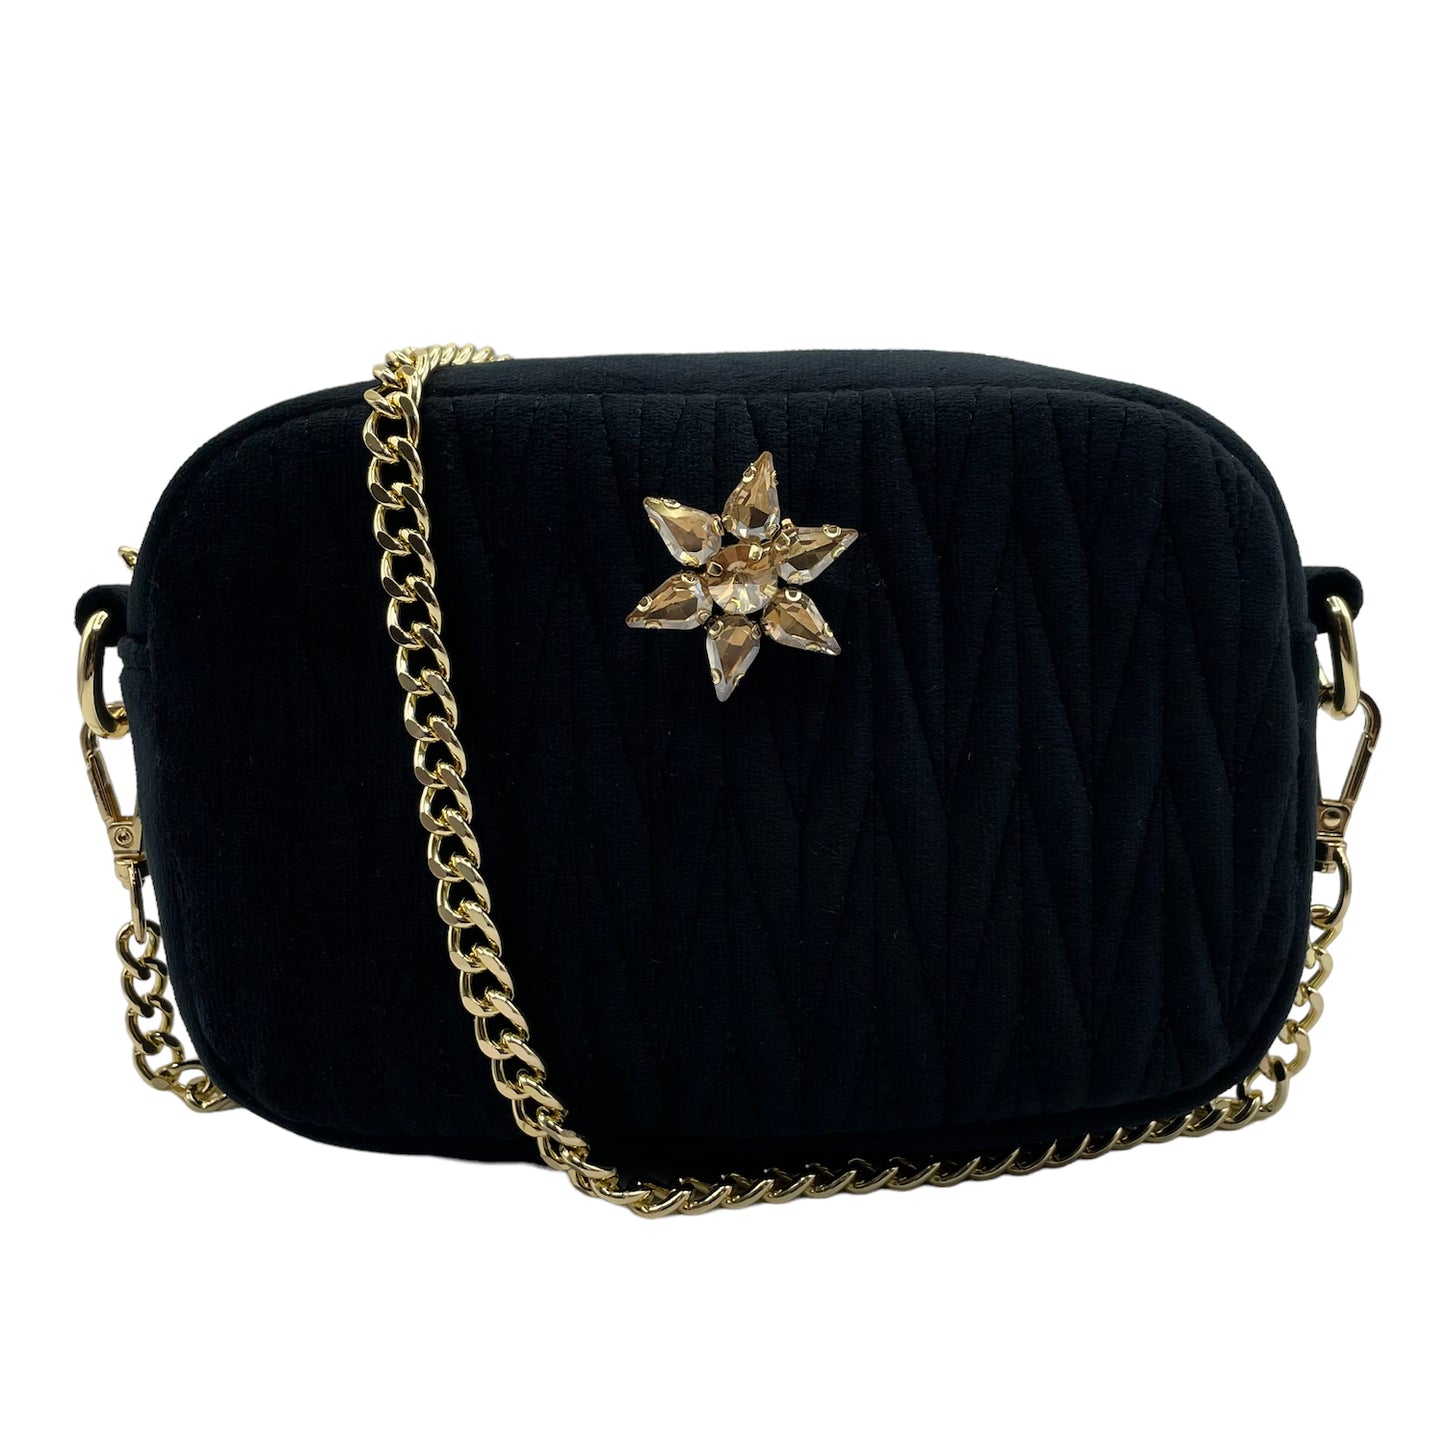 Velvet Rivington handbag in black, recycled velvet